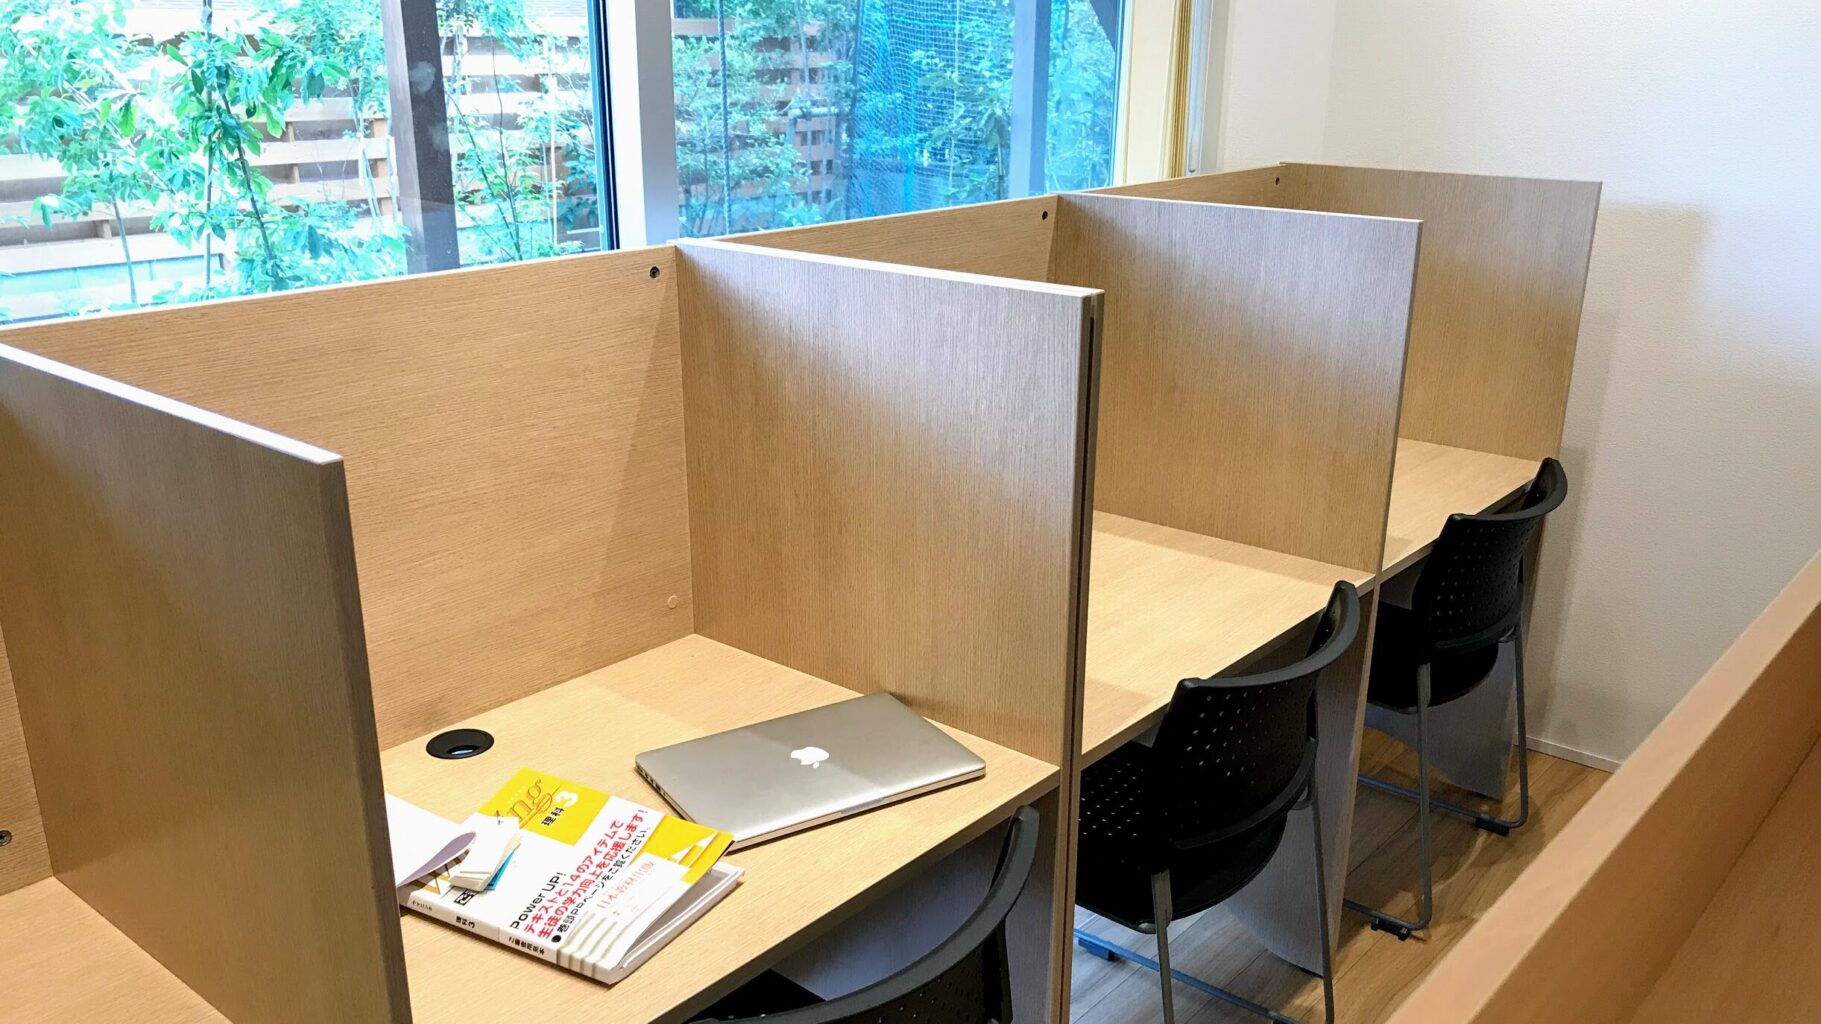 館山市の学習塾ランゲージ・ラボラトリーの自習室の机